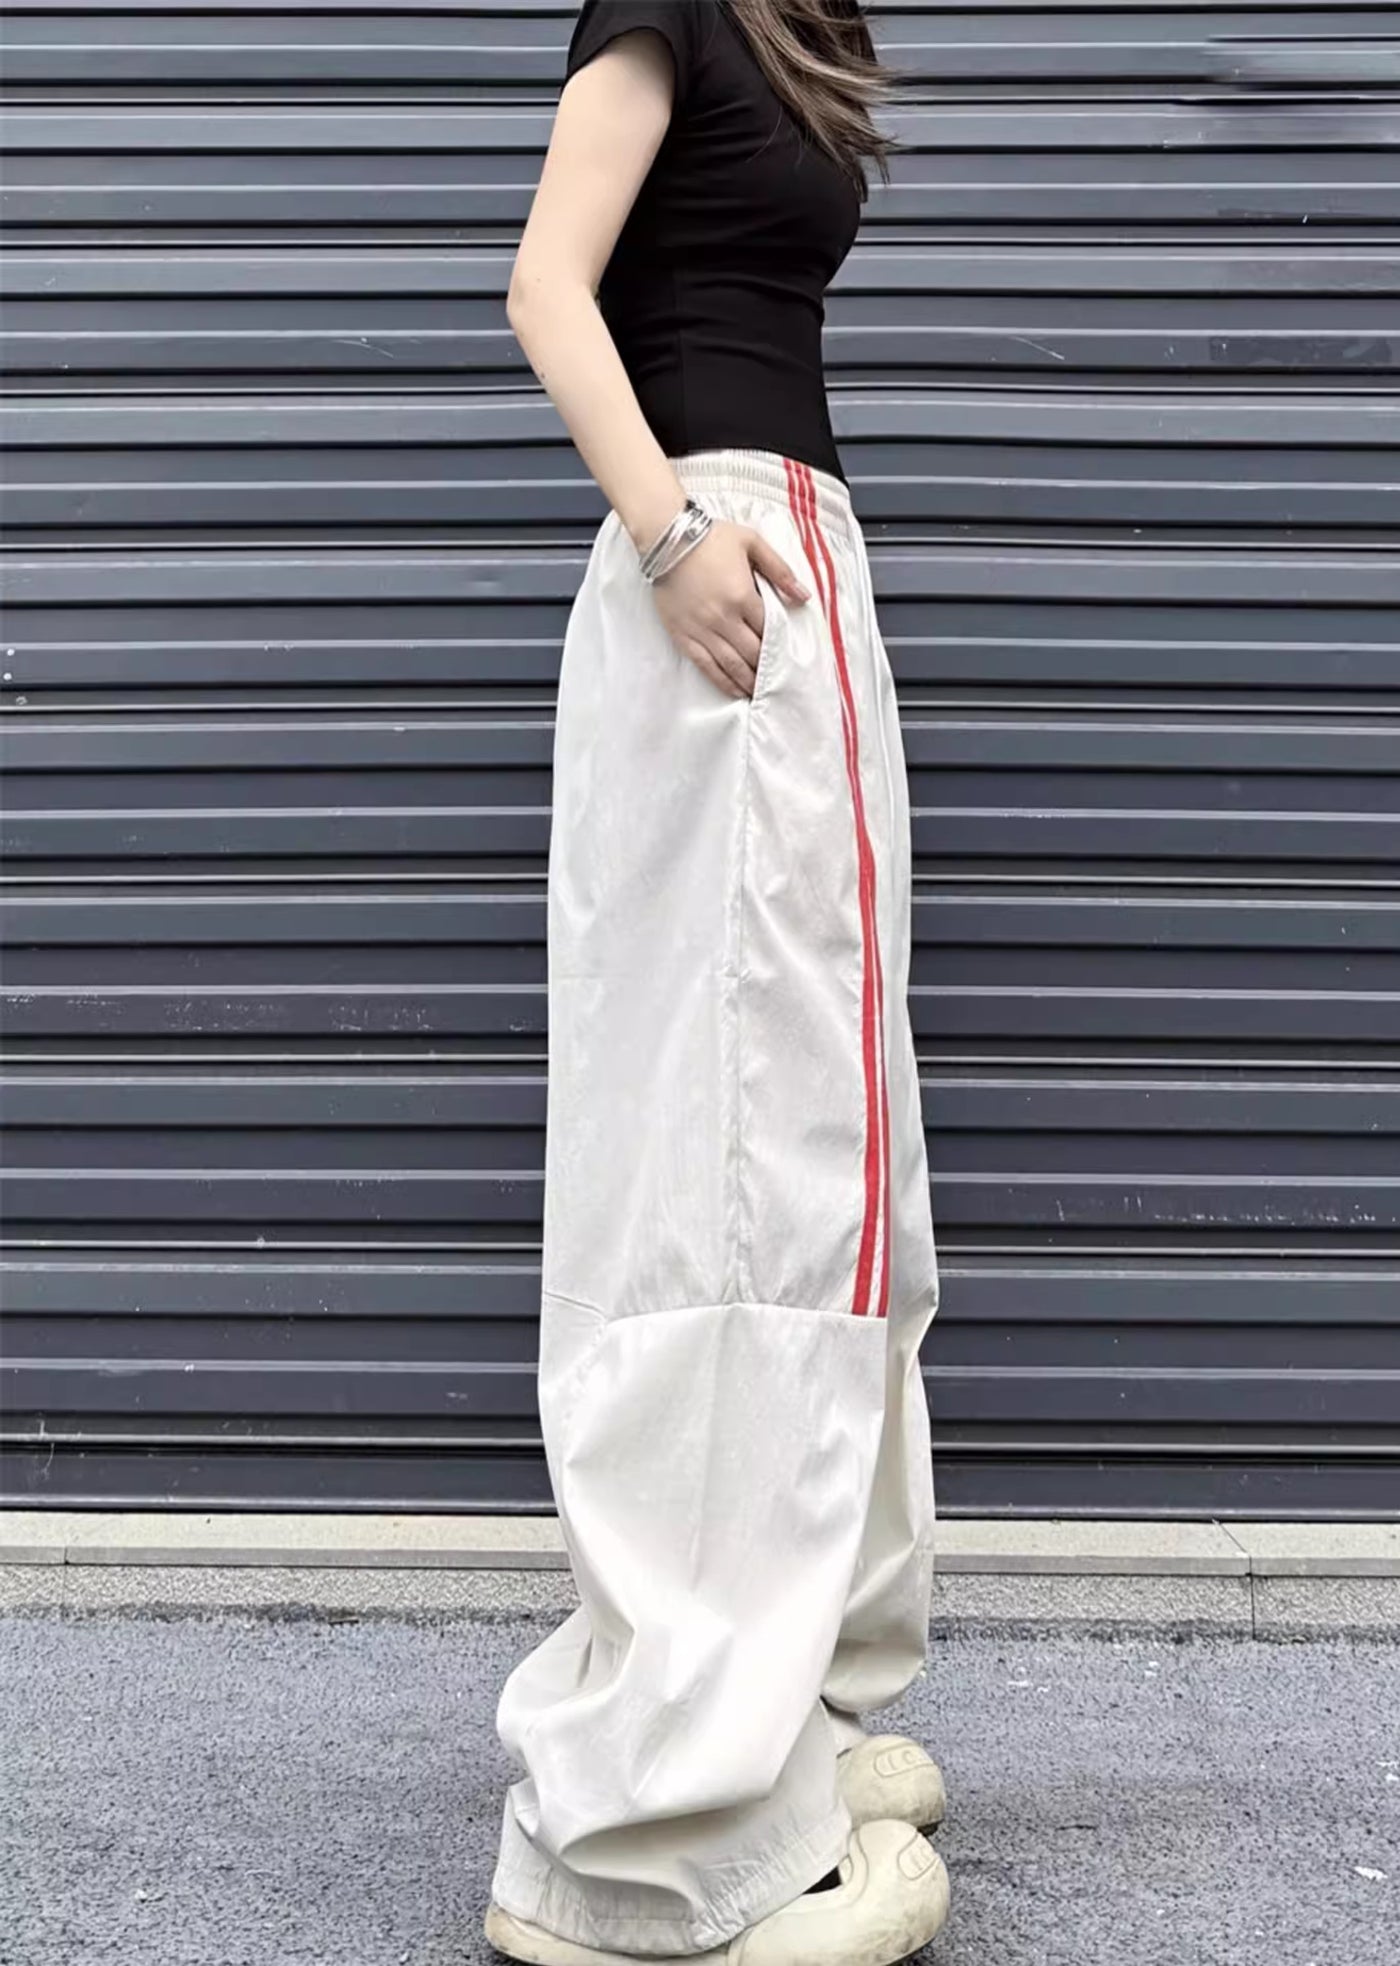 【W3】Front double line pocket design pants  WO0063